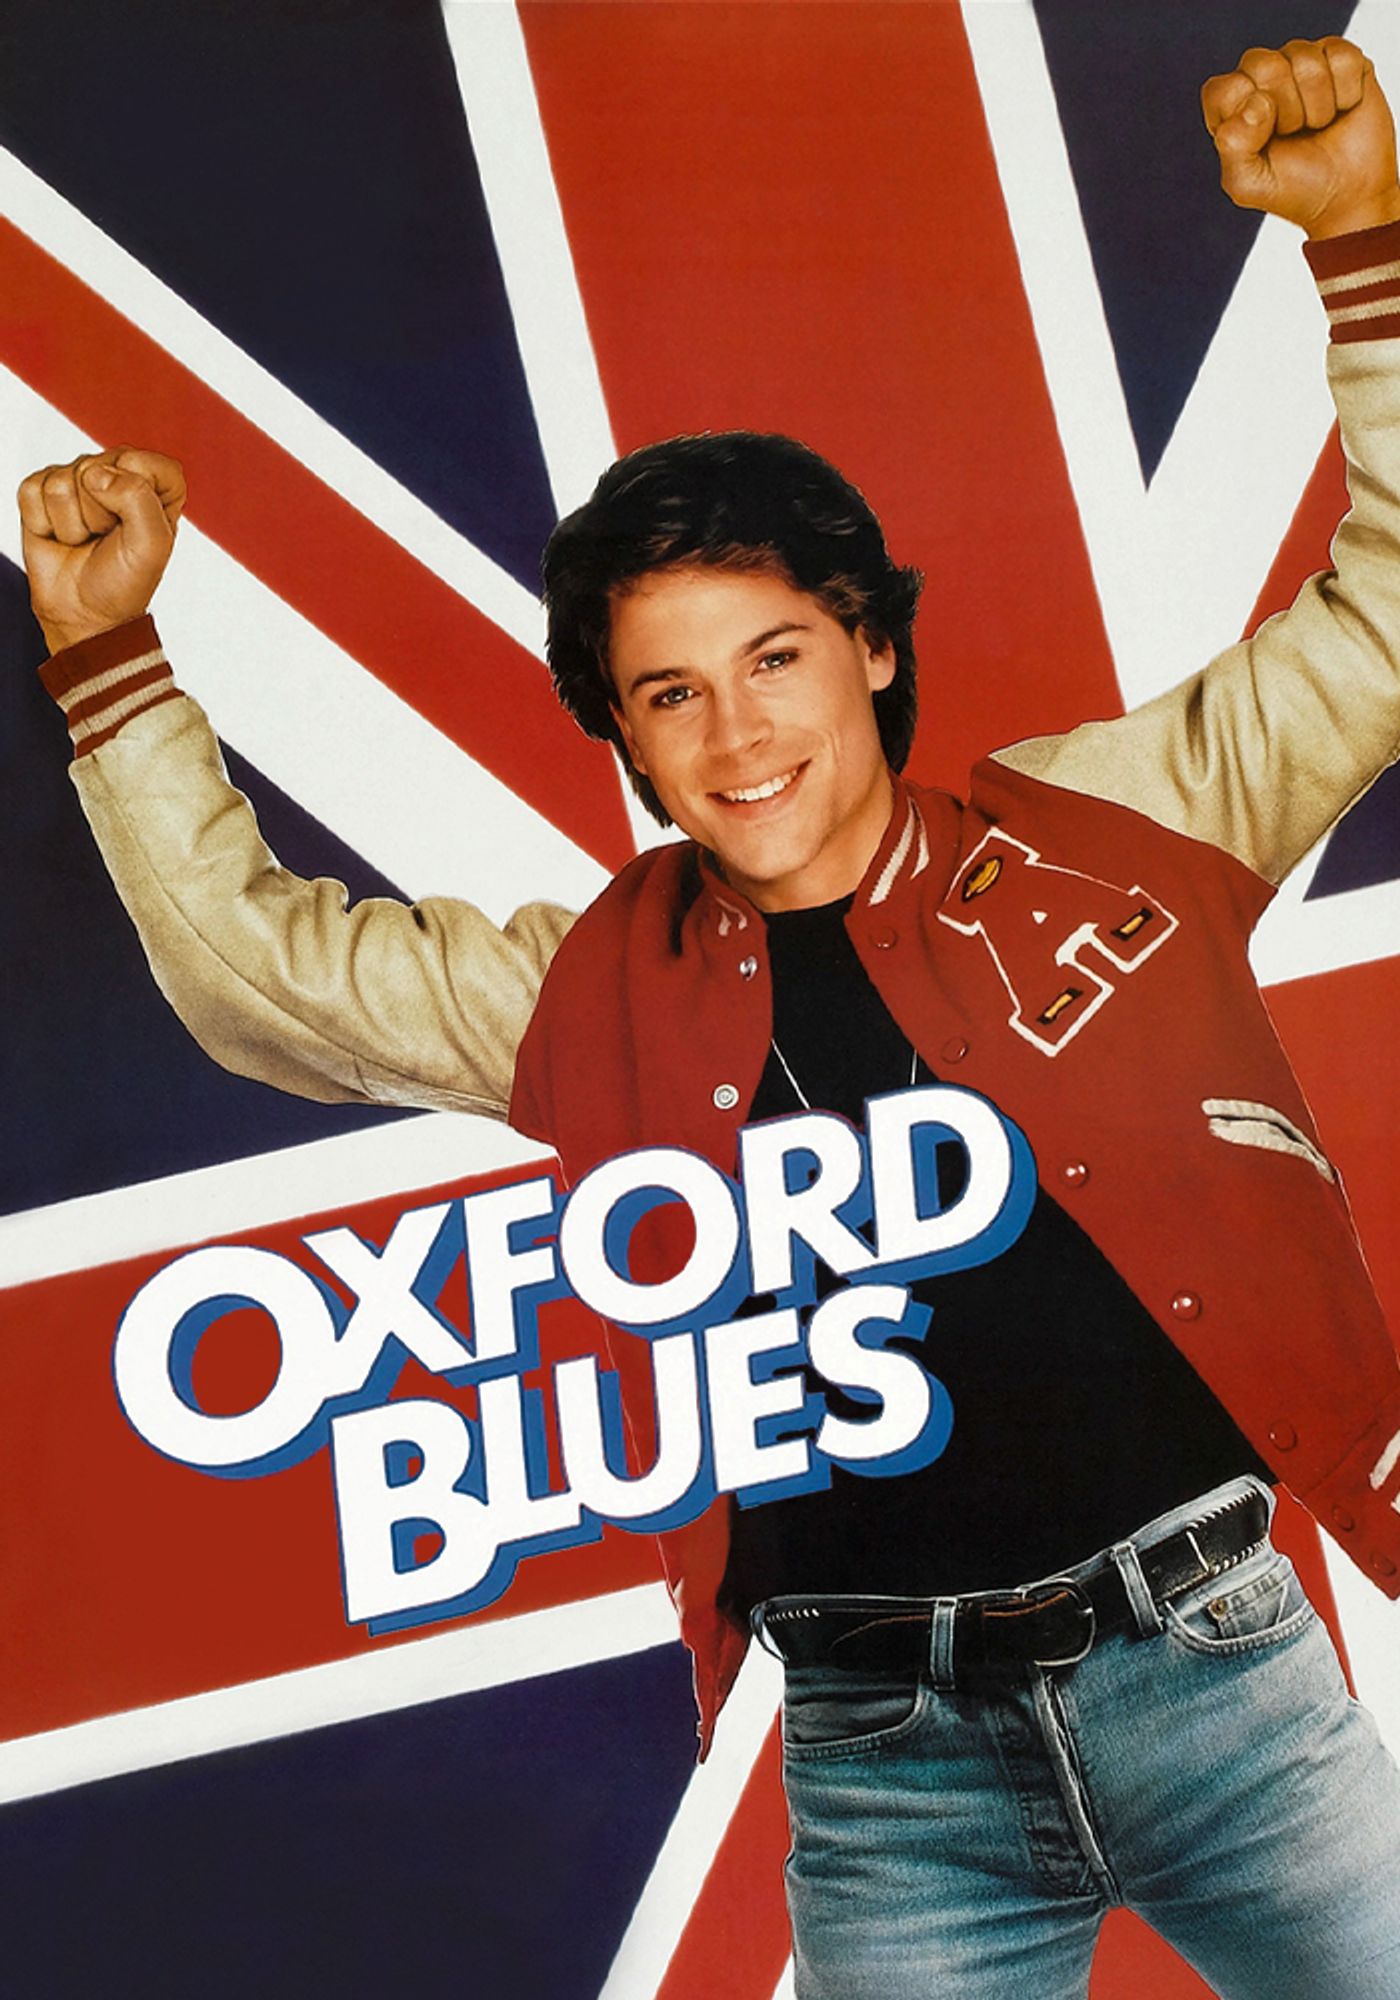 Oxford blues